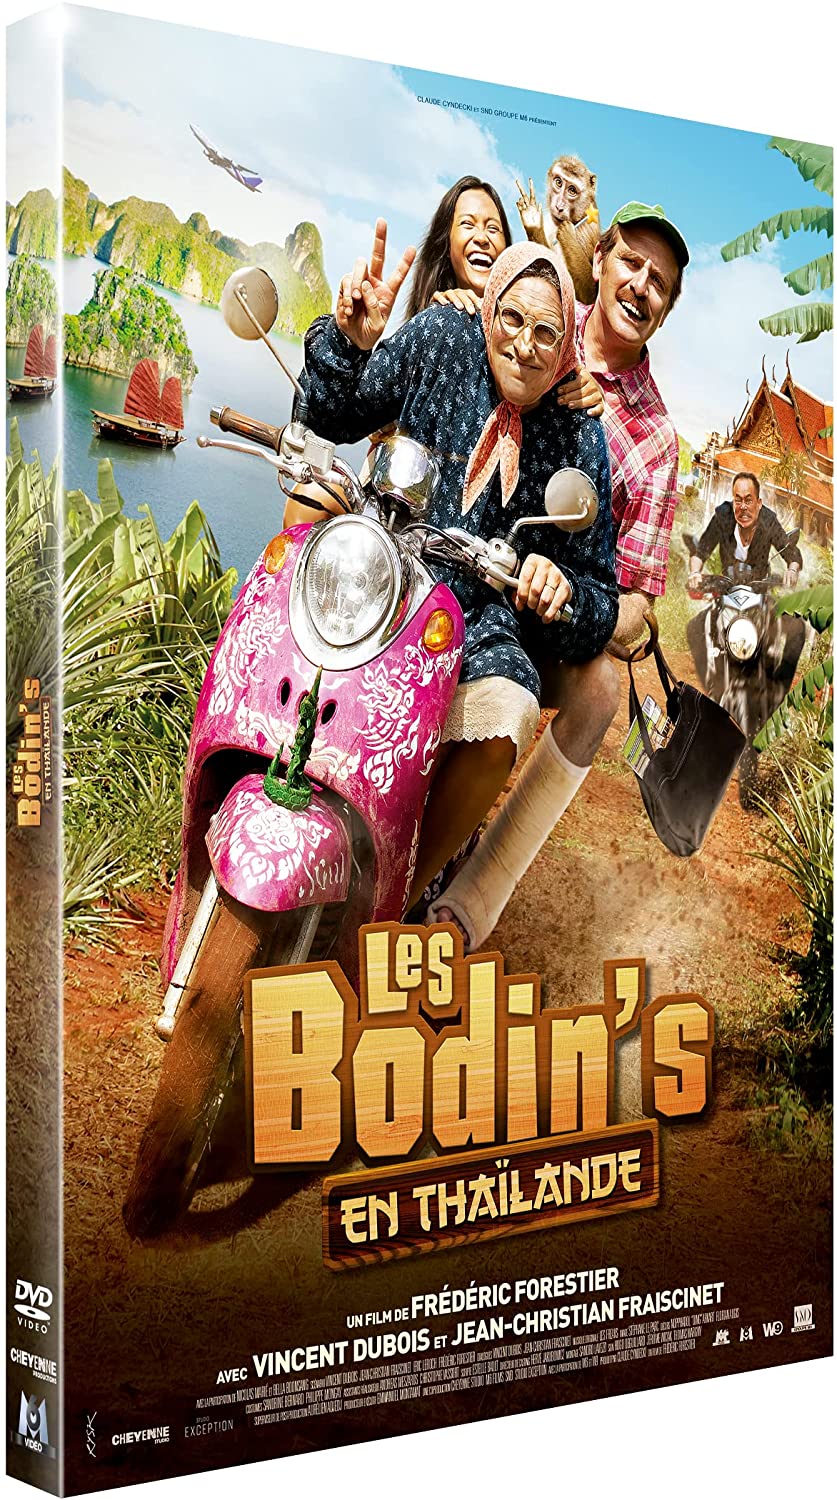 Sortie du DVD Les Bodin's en Thaïlande le 17 mars !